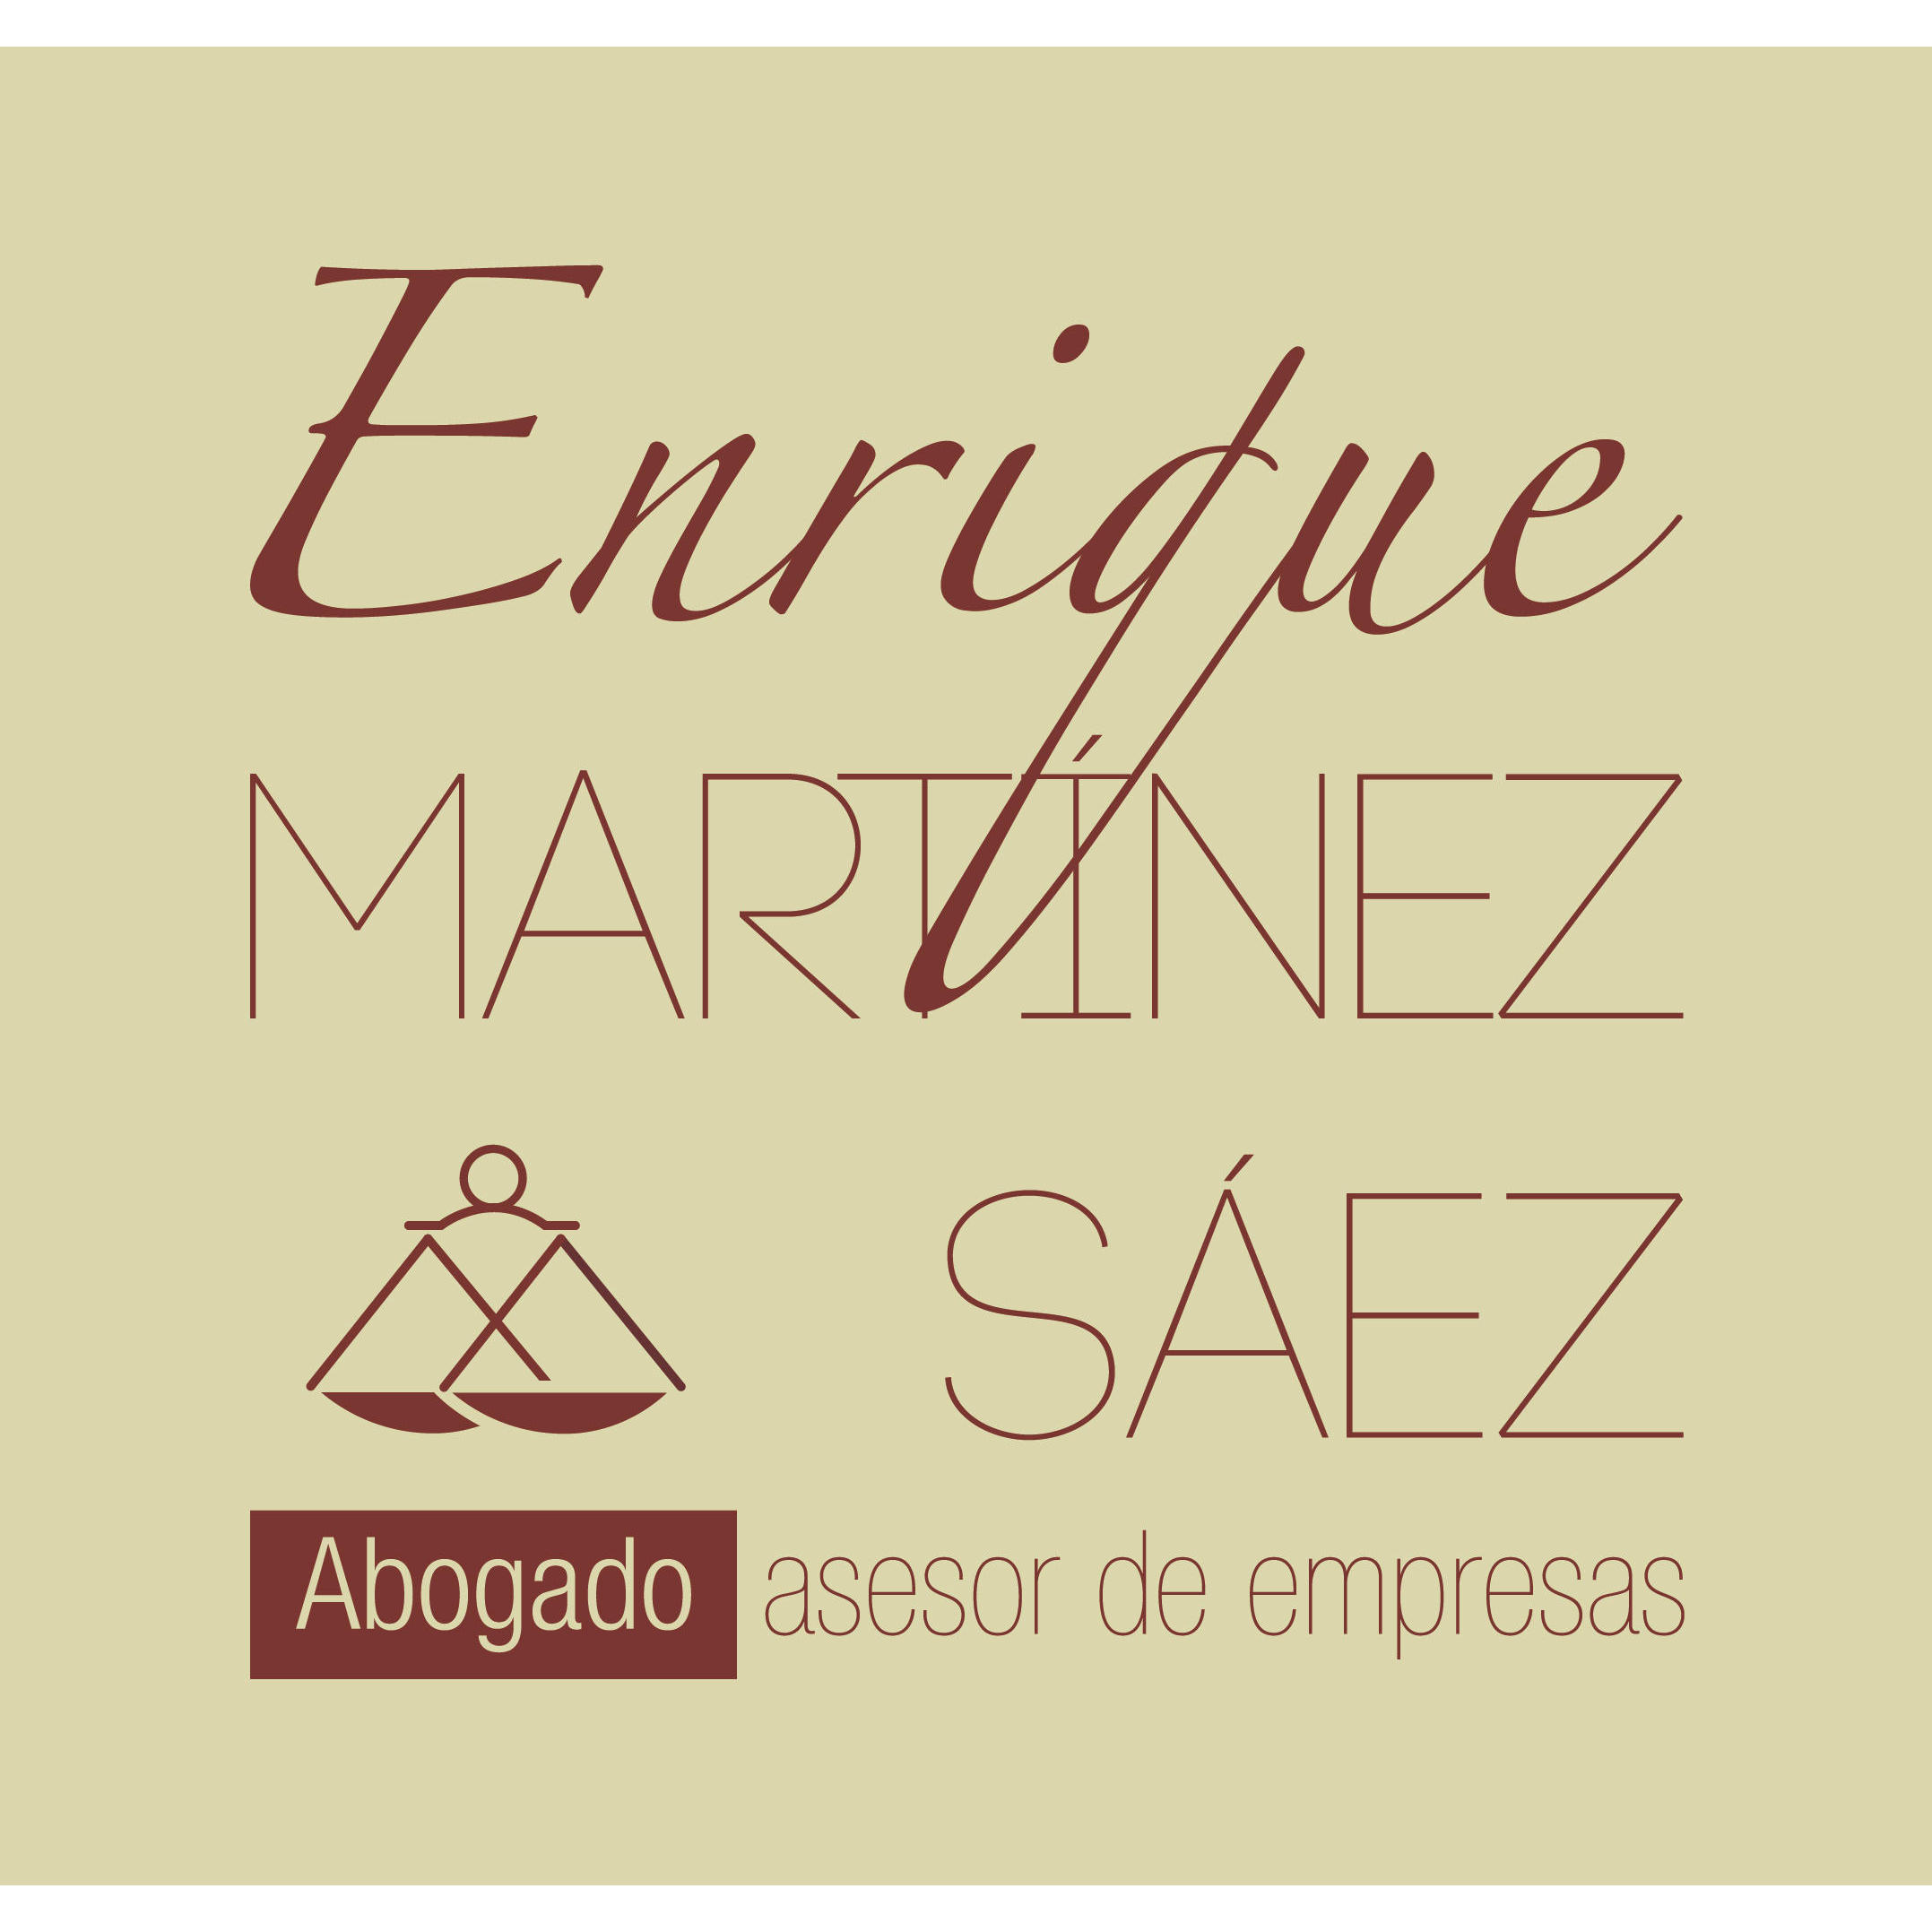 Abogado Alberic - Enrique Martinez Logo